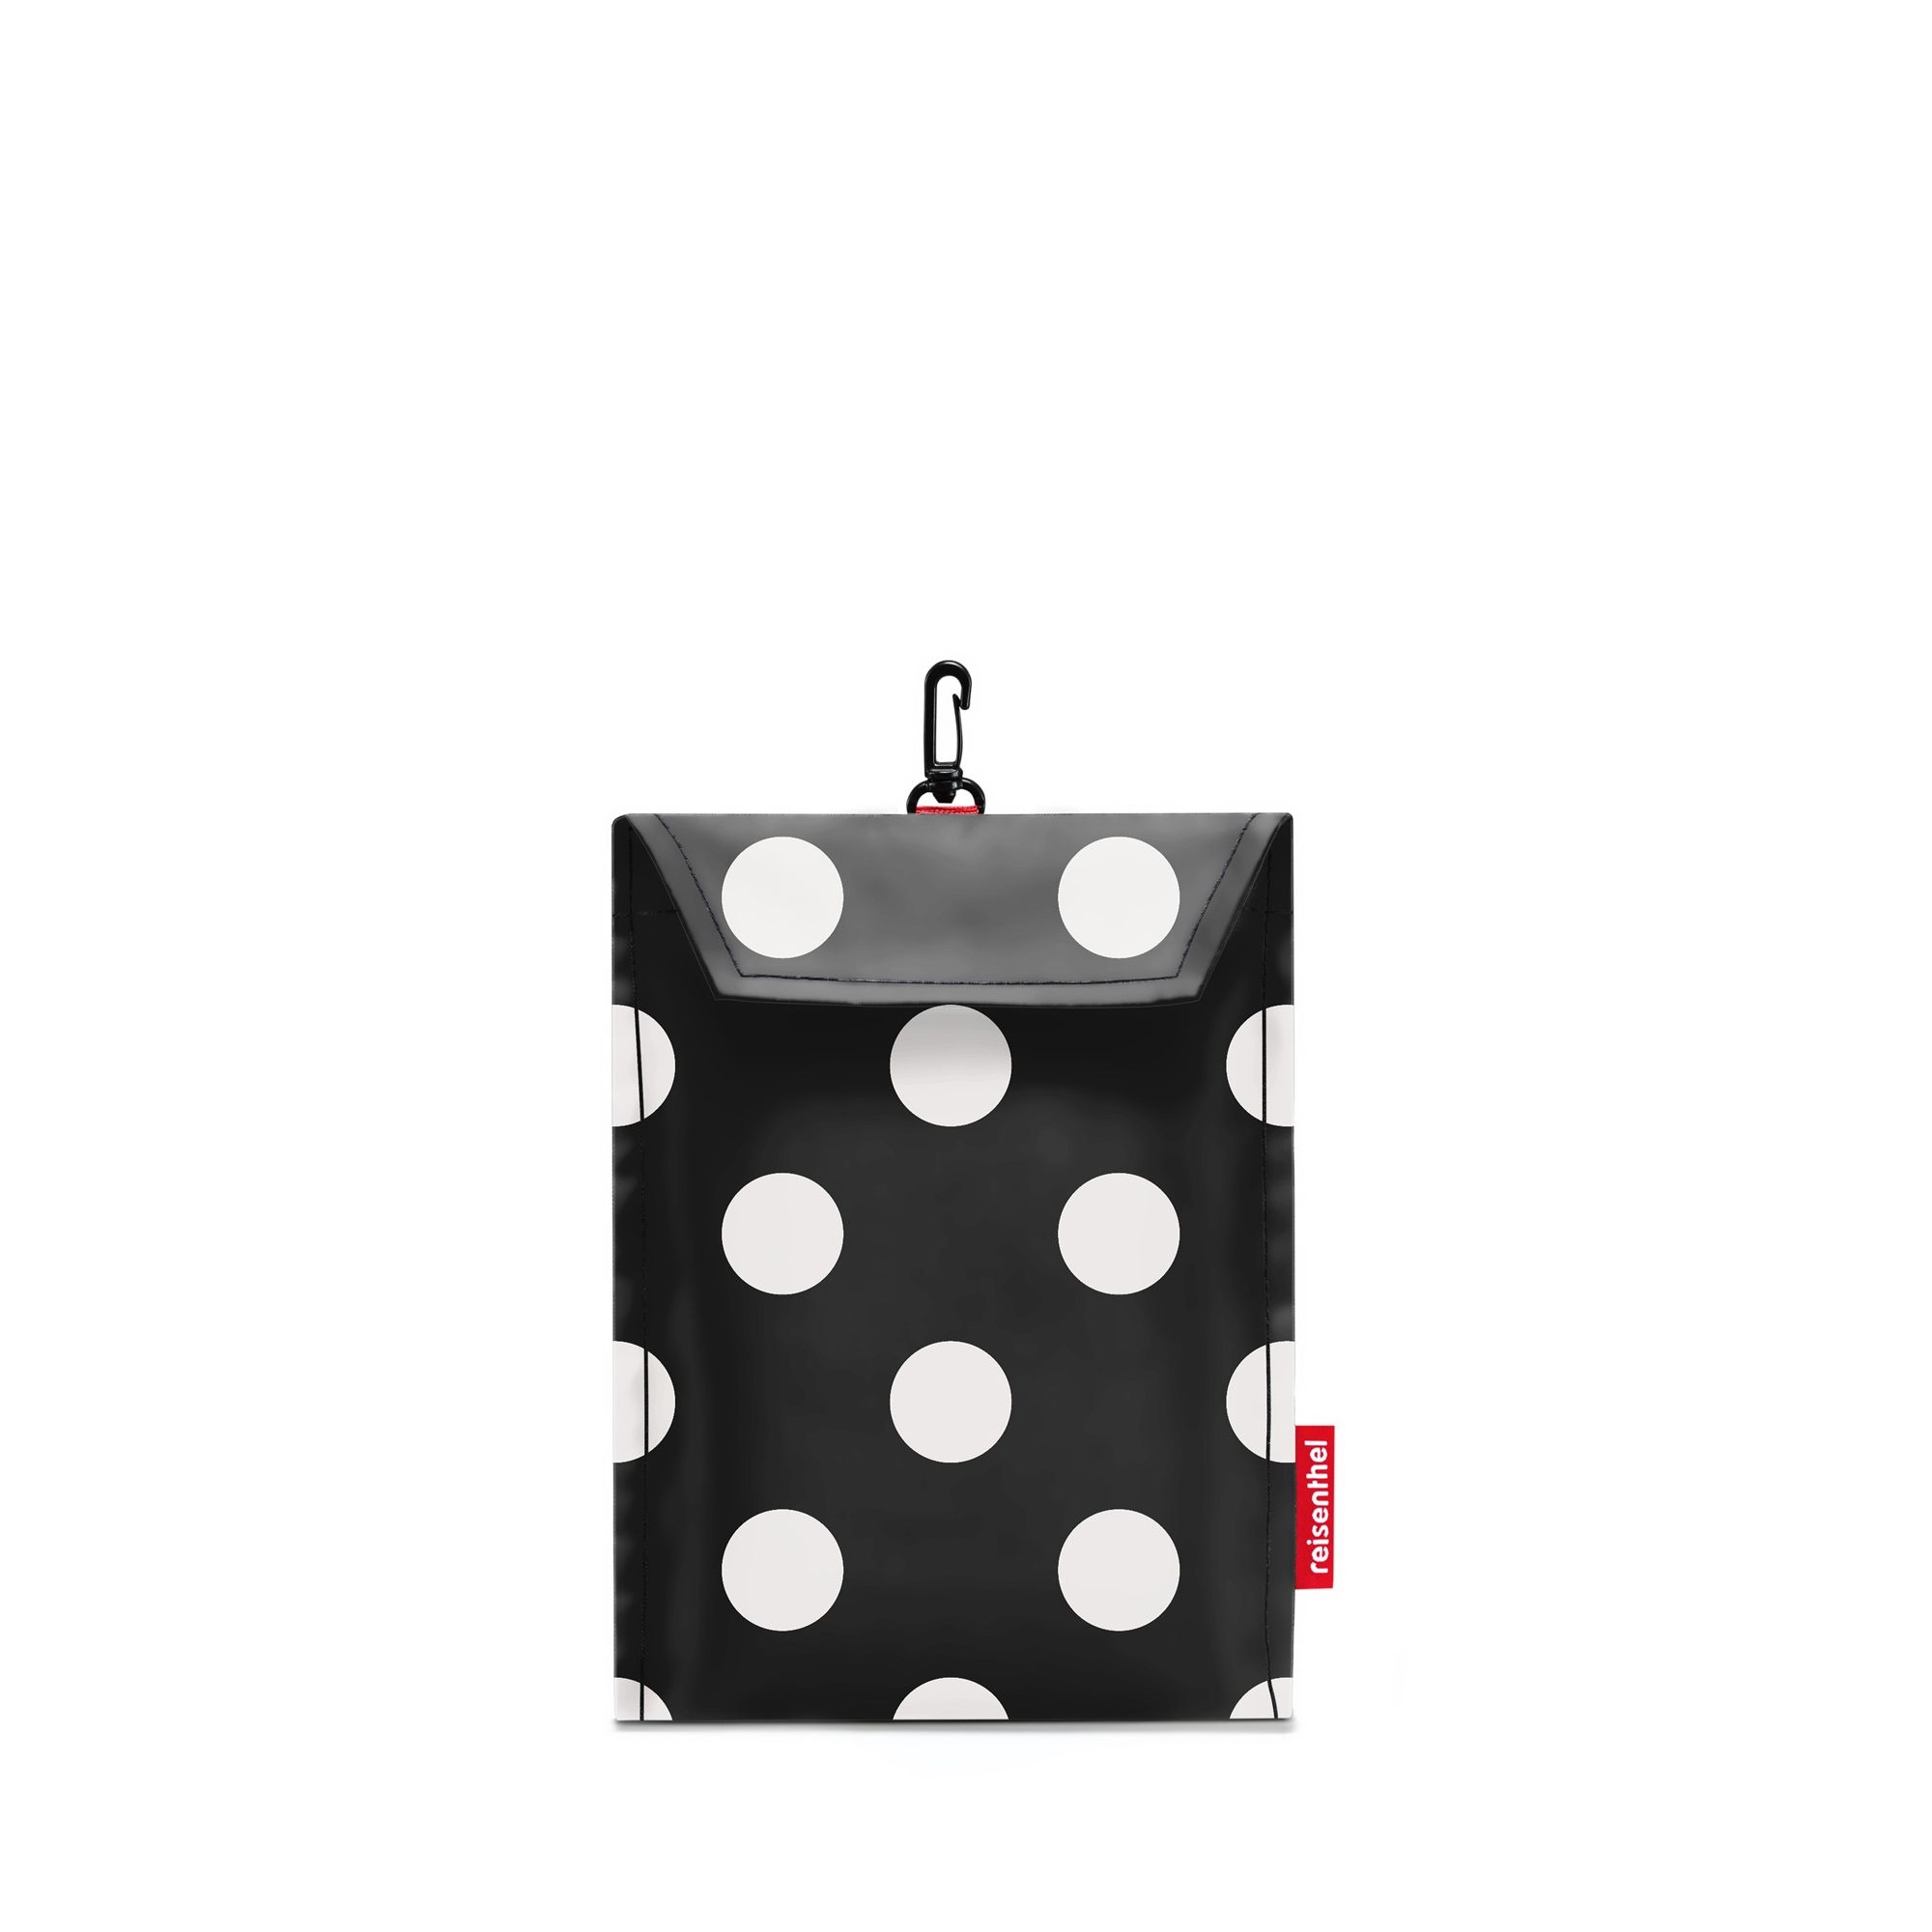 reisenthel - mini maxi travelbag - dots white